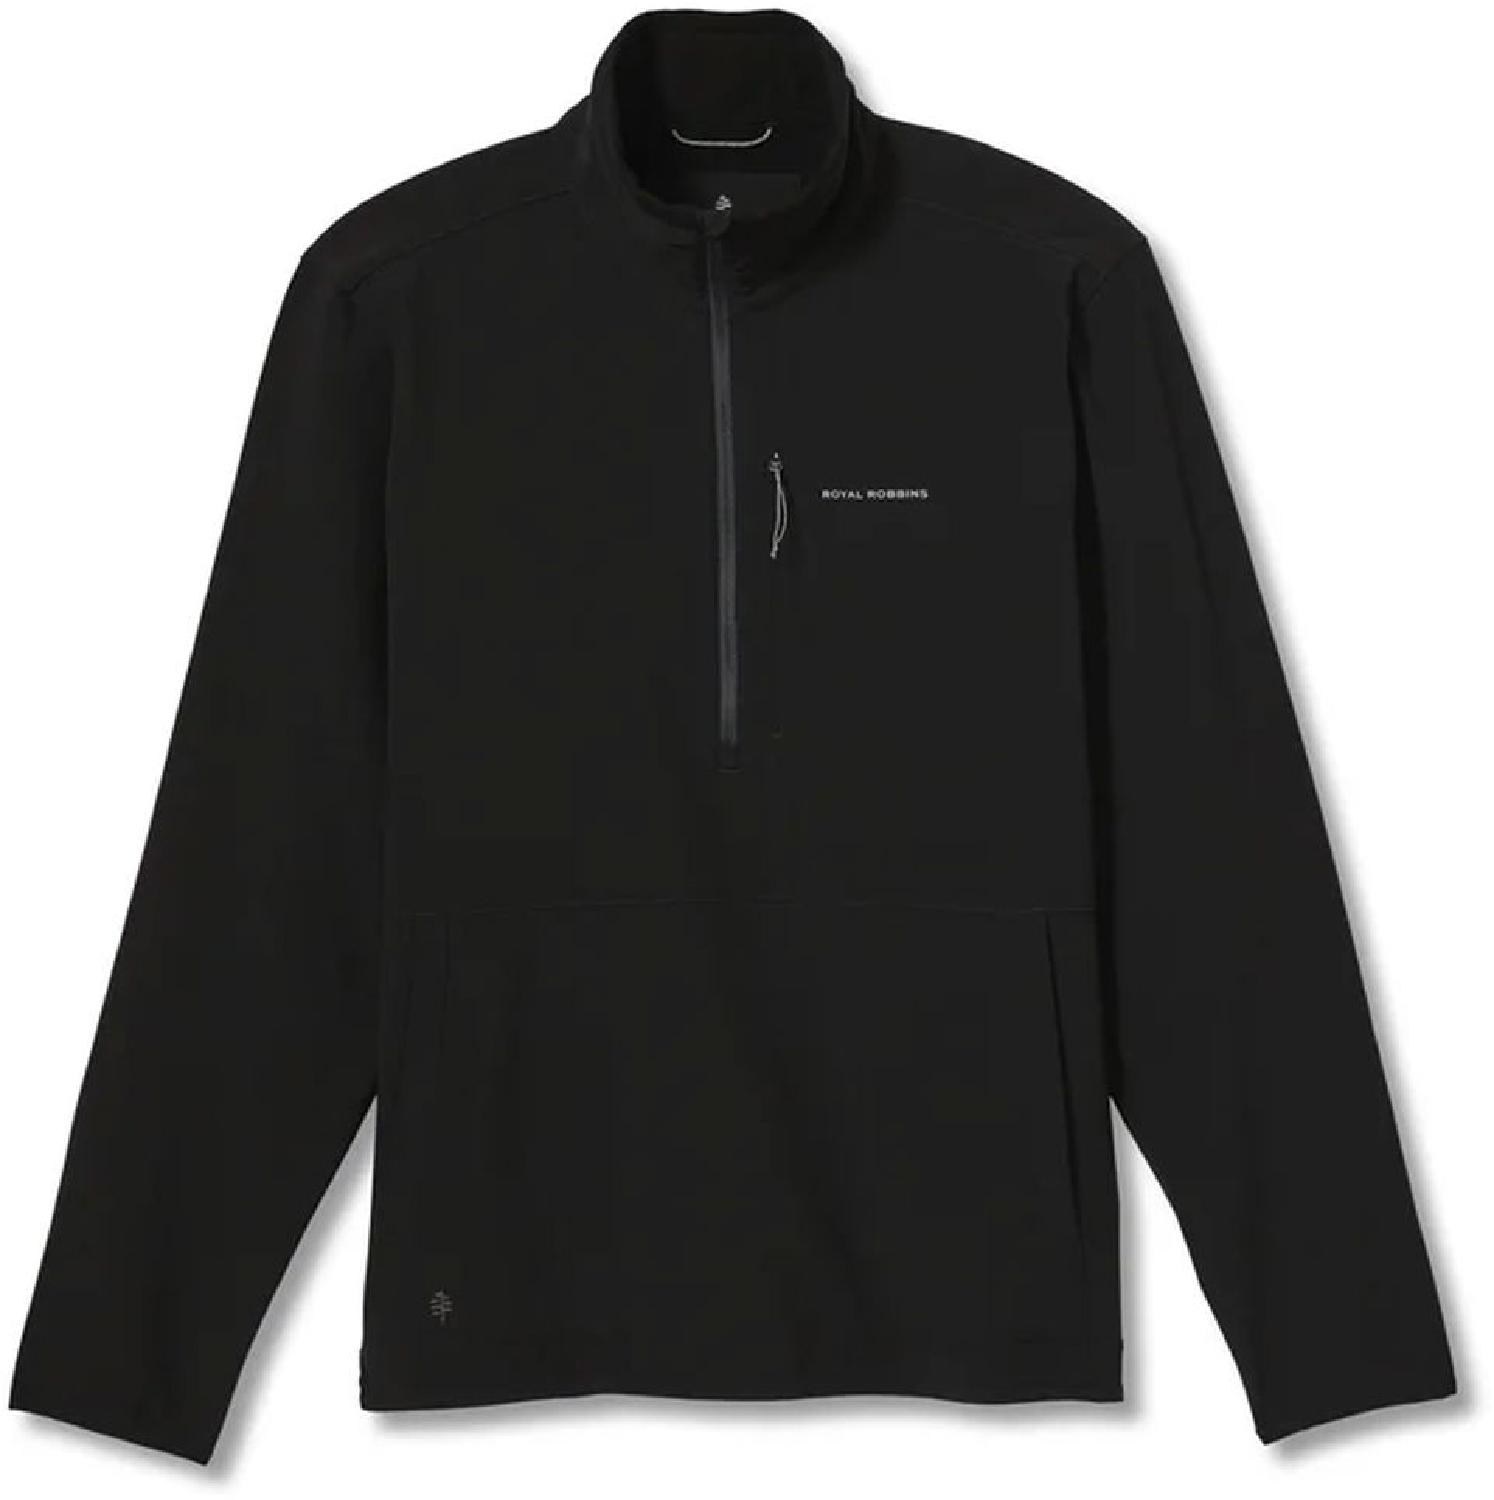 Флисовый пуловер VentureLayer с молнией четверть, мужской Royal Robbins, черный